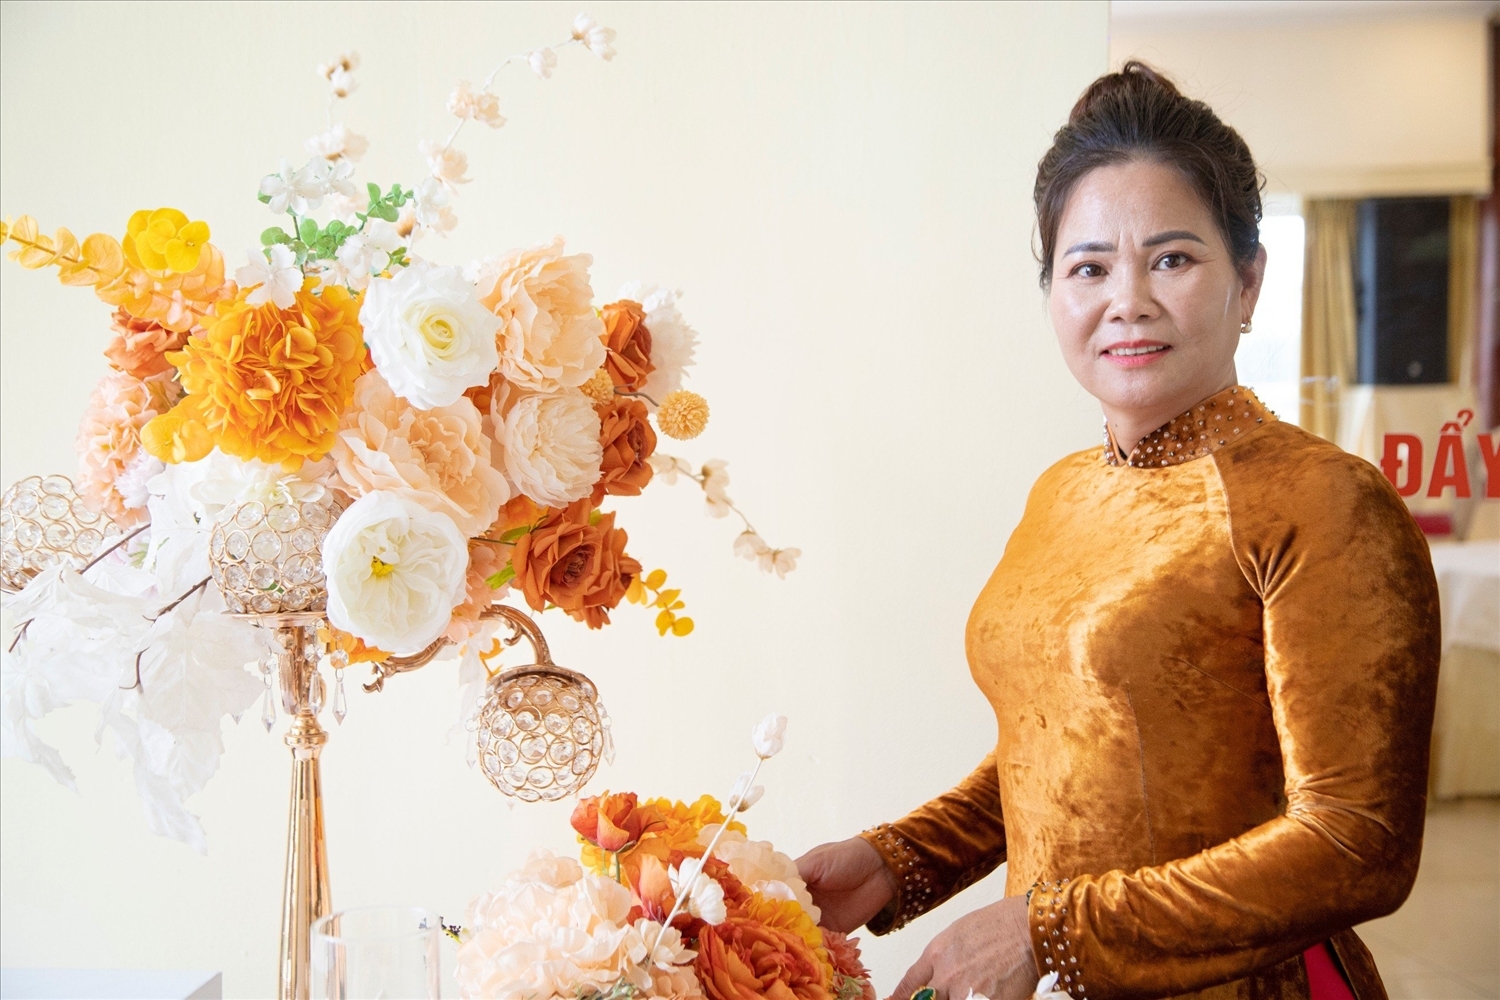 Chị Hoàng Thị Huyền, một nữ doanh nhân dân tộc Tày luôn mong muốn được tham gia nhiều hơn nữa vào các hoạt động gặp gỡ, giao lưu văn hóa và chia sẻ kinh nghiệm kinh doanh với các nữ doanh nhân trên mọi miền Tổ quốc